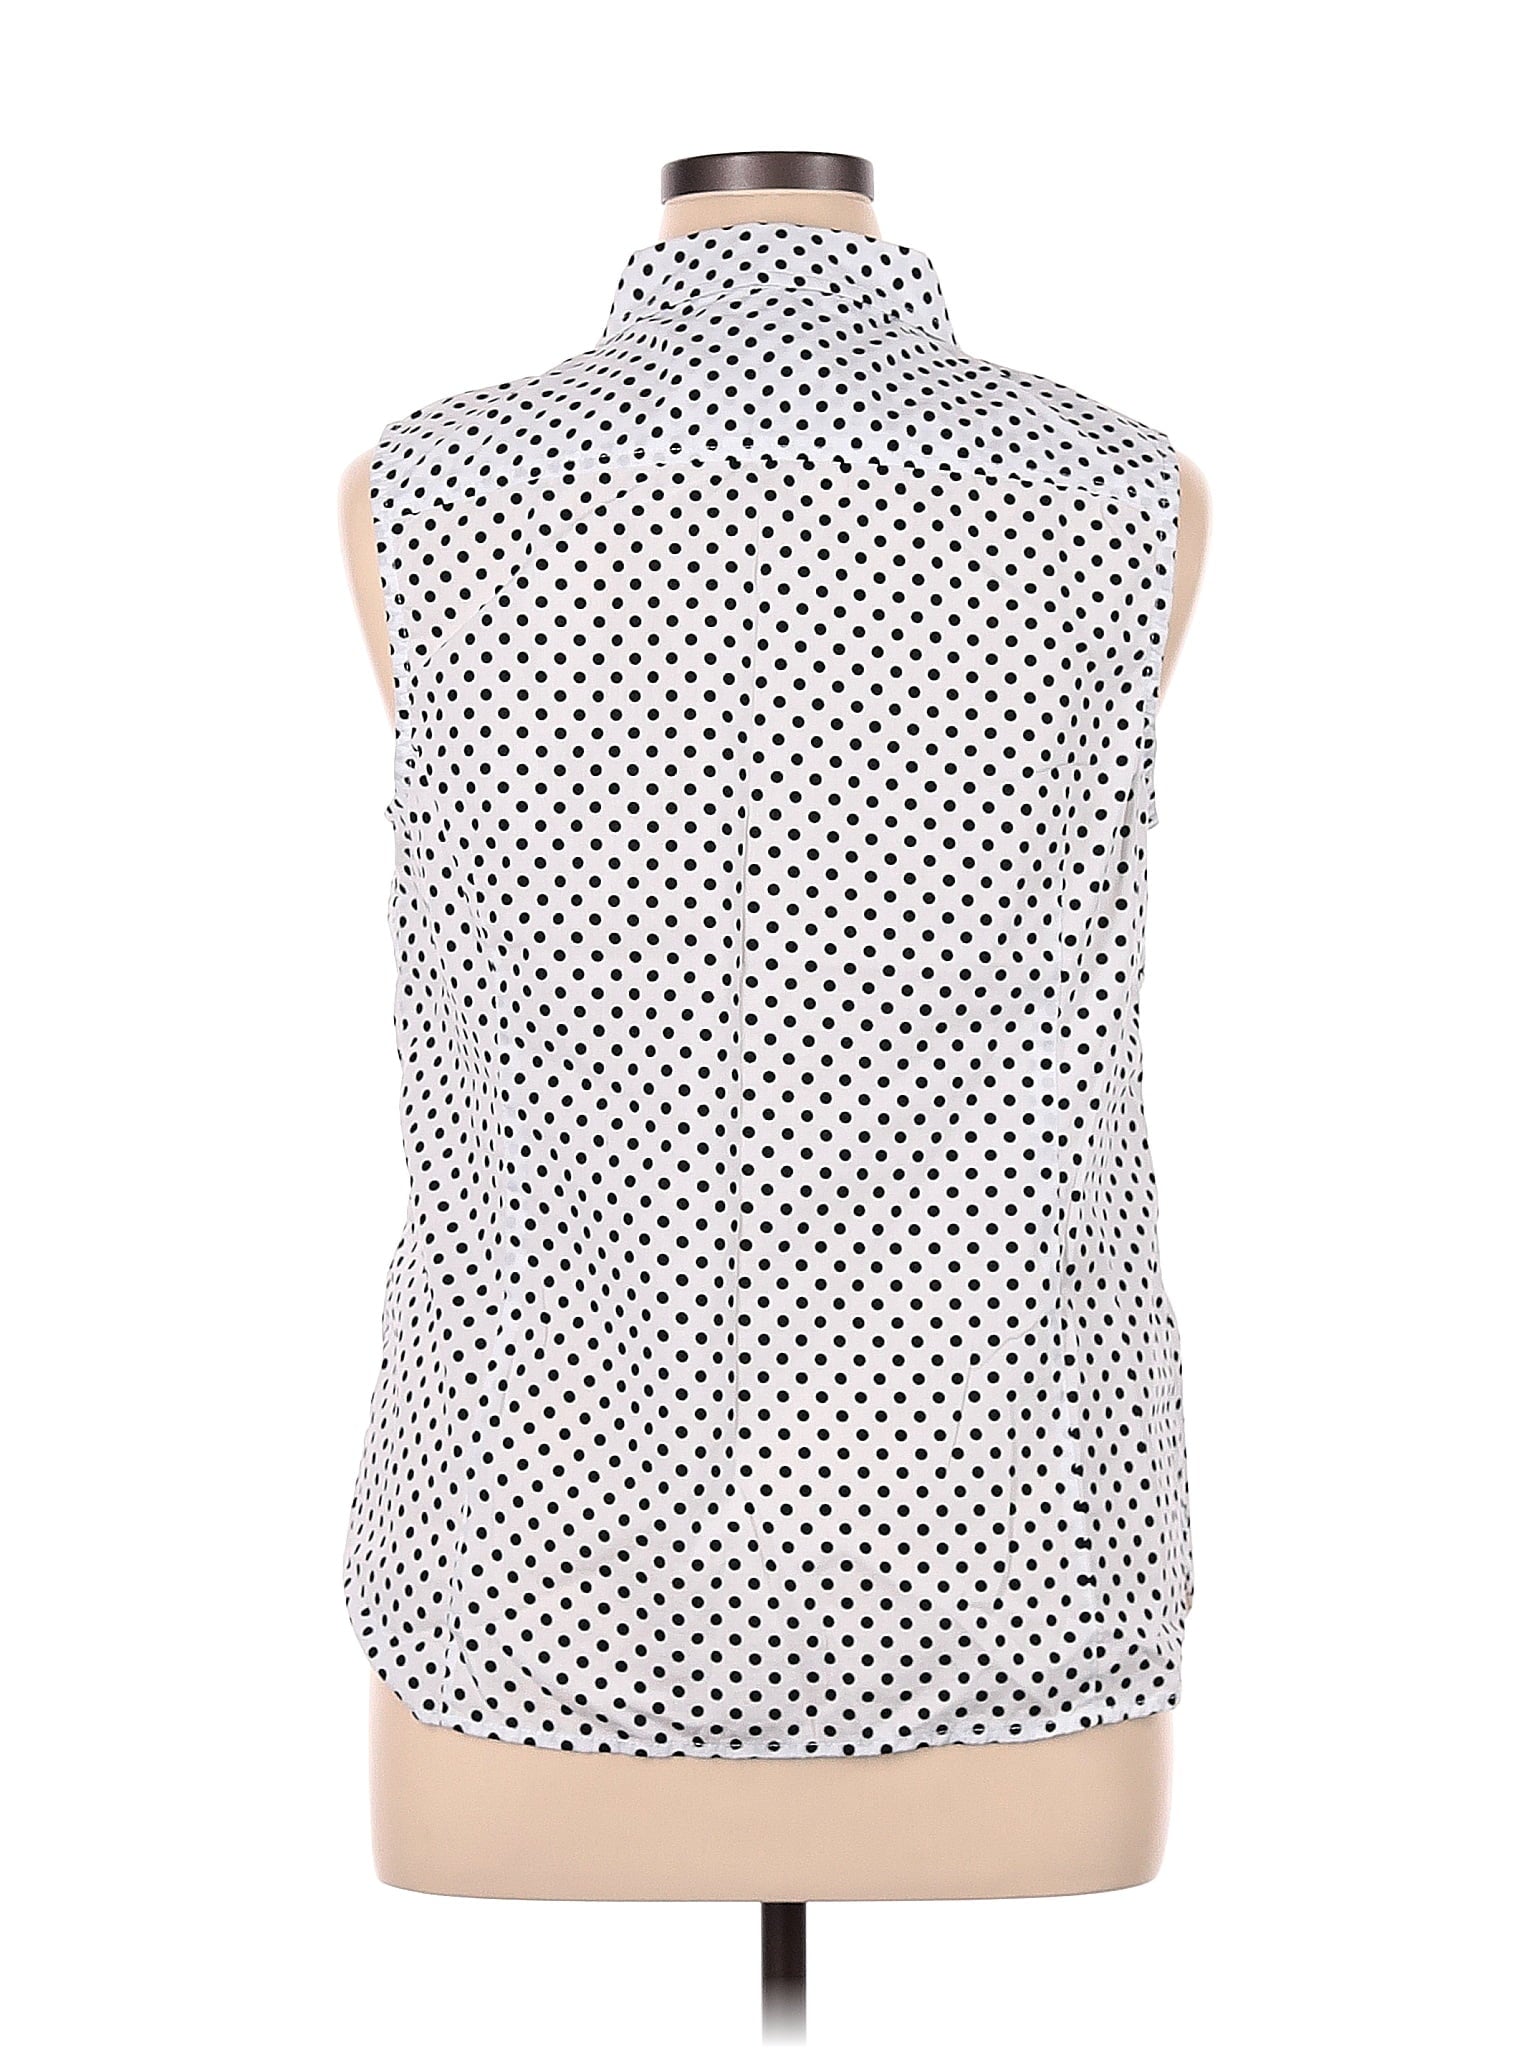 Sleeveless Button Down Shirt size - XL